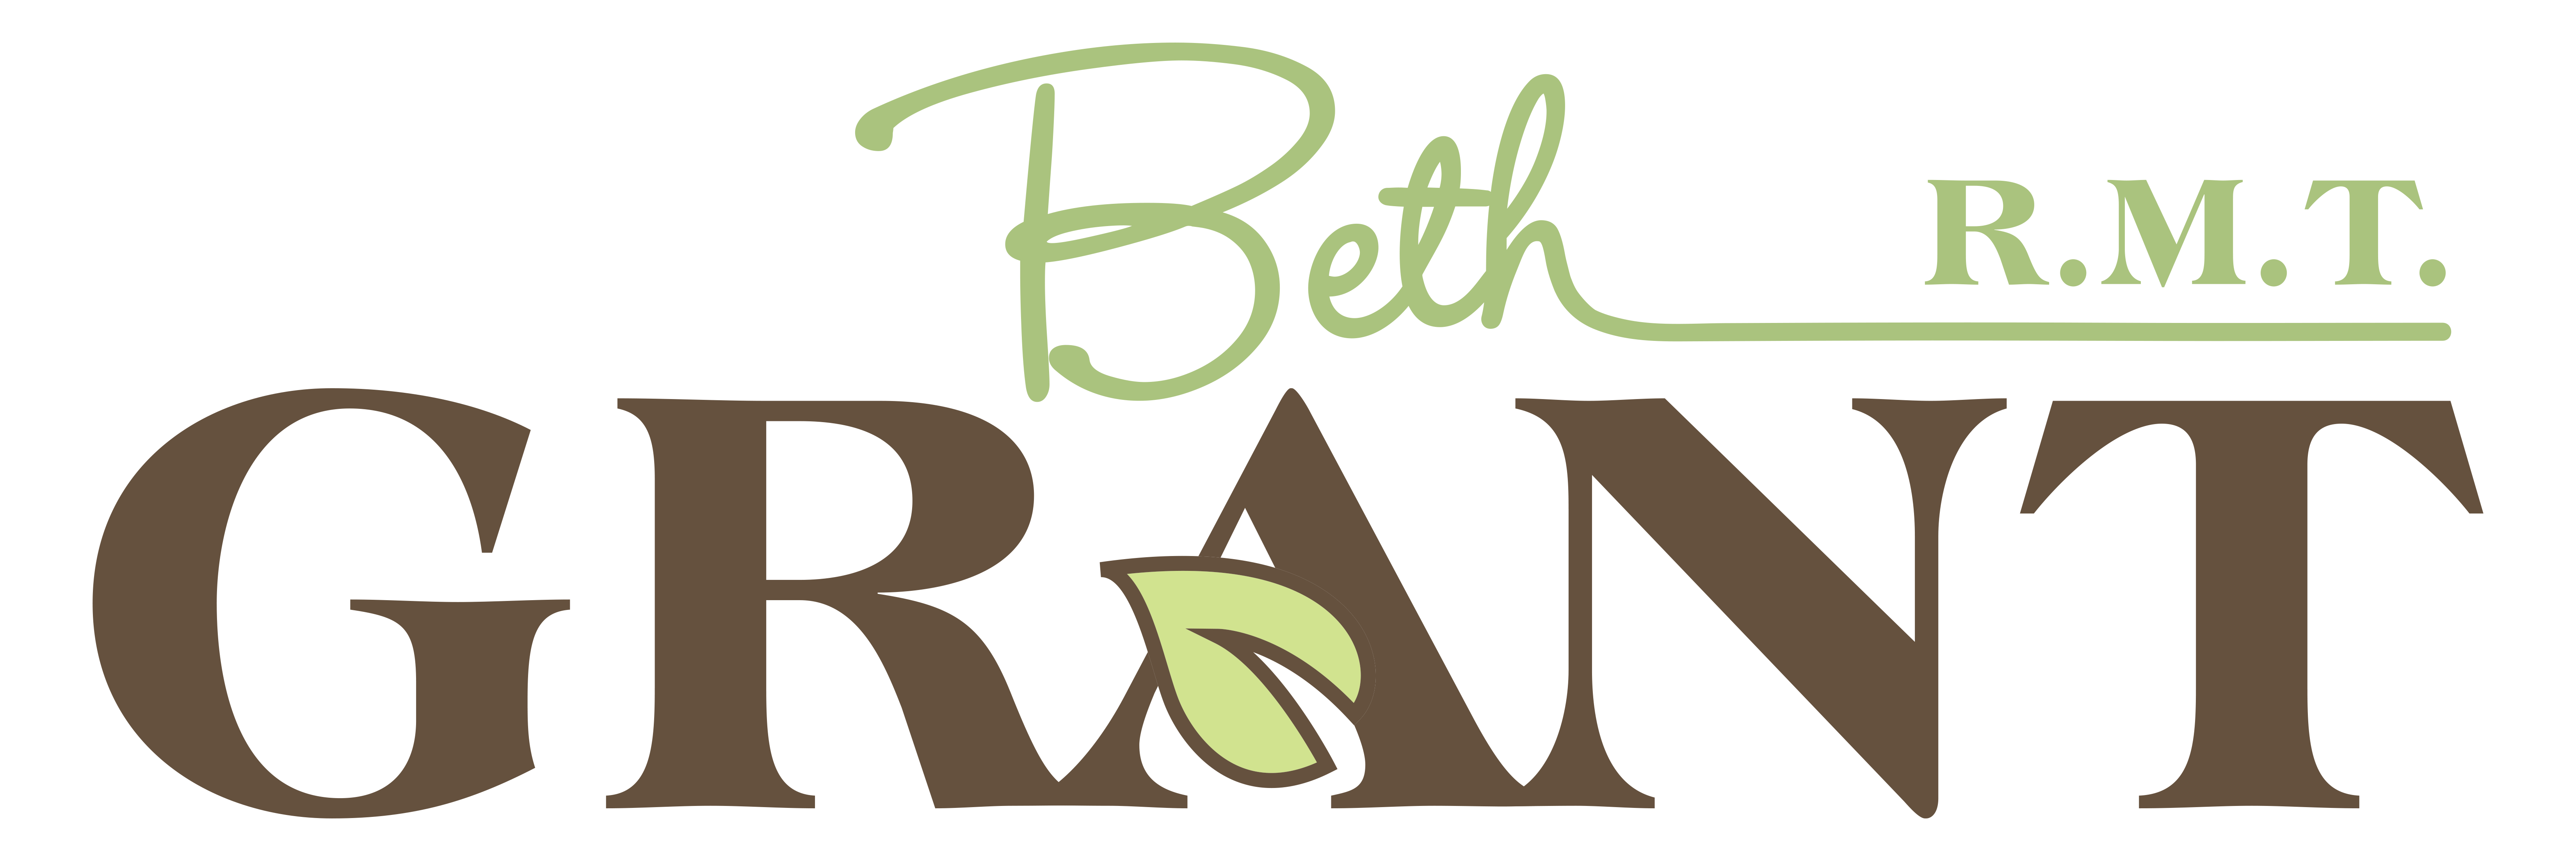 Beth Grant, RMT